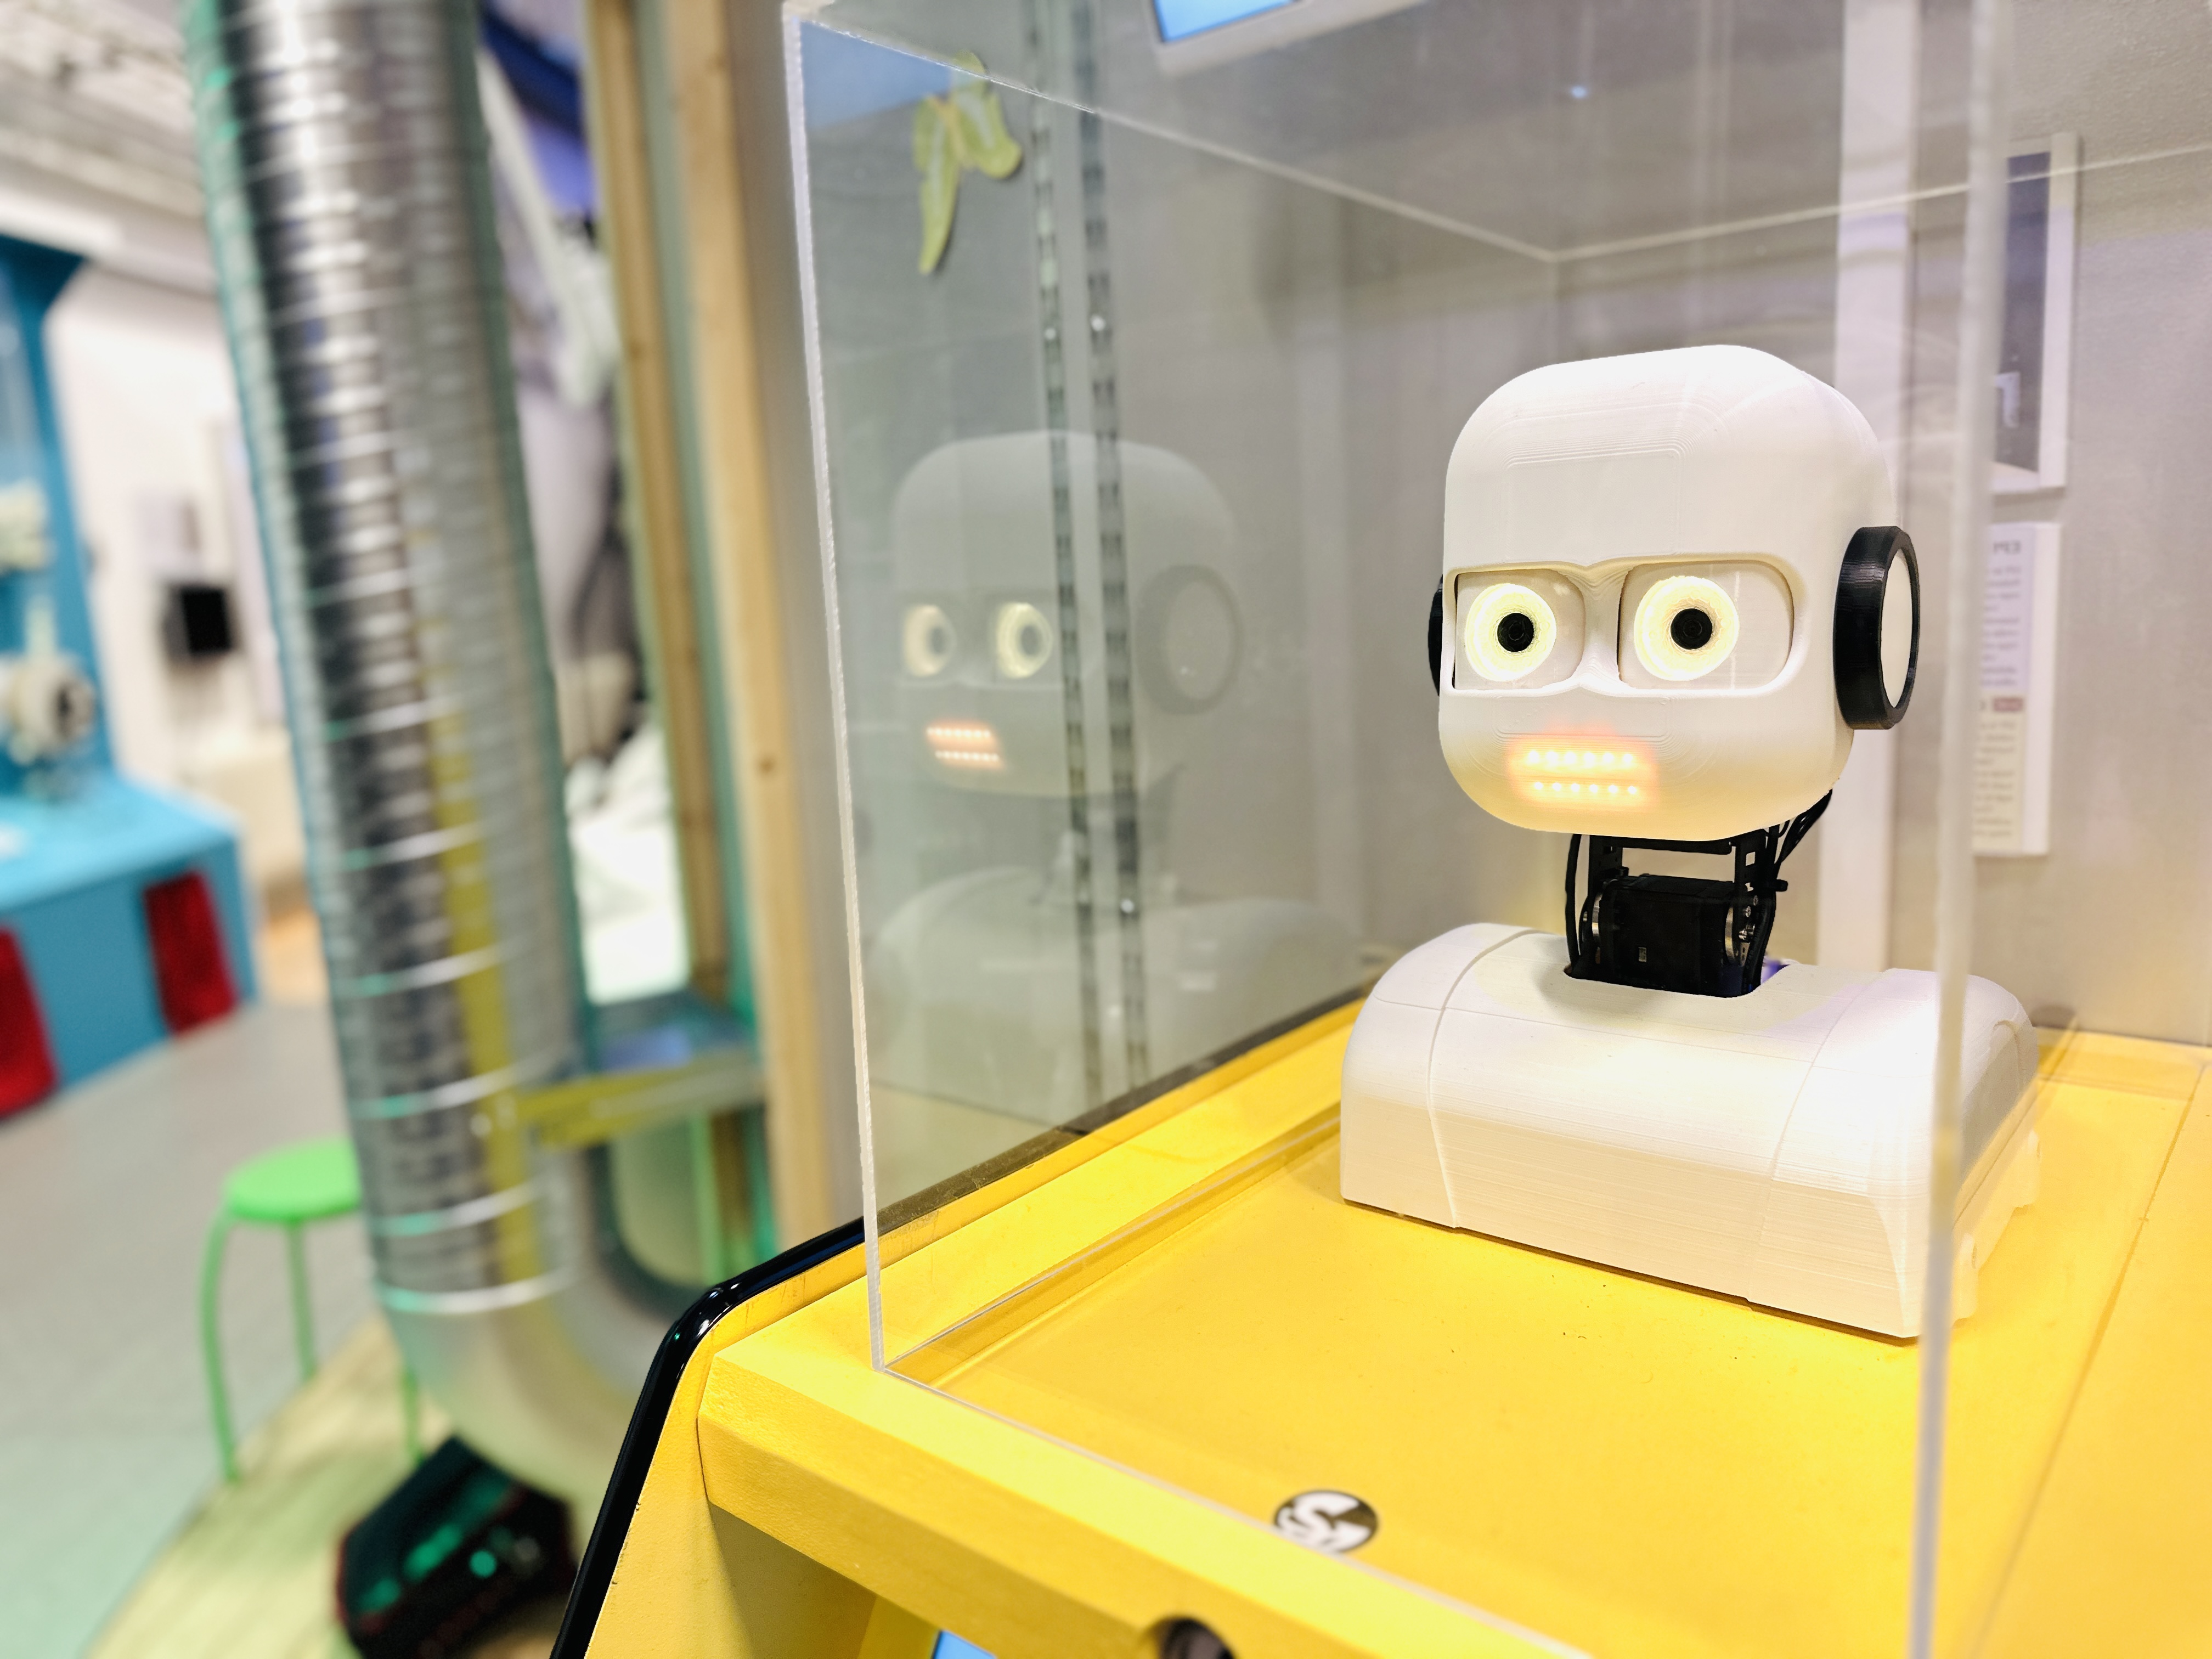 Roboten EPI i sin gula monter i vattenhallens AI-utställning. Foto